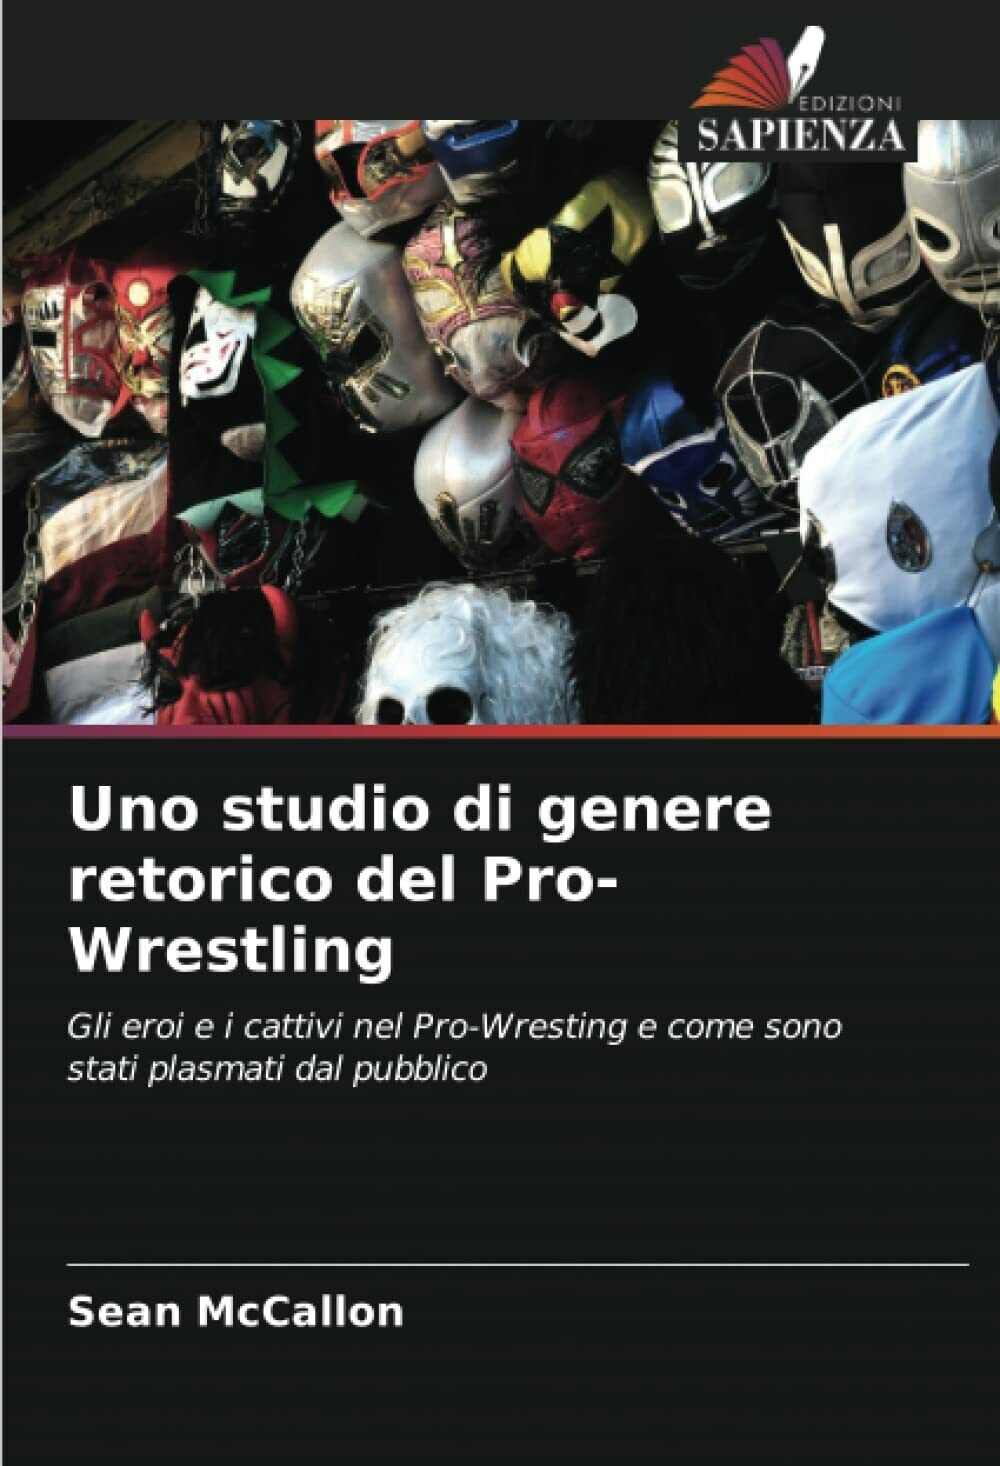 Uno studio di genere retorico del Pro-Wrestling - Sean McCallon - Sapienza, 2022